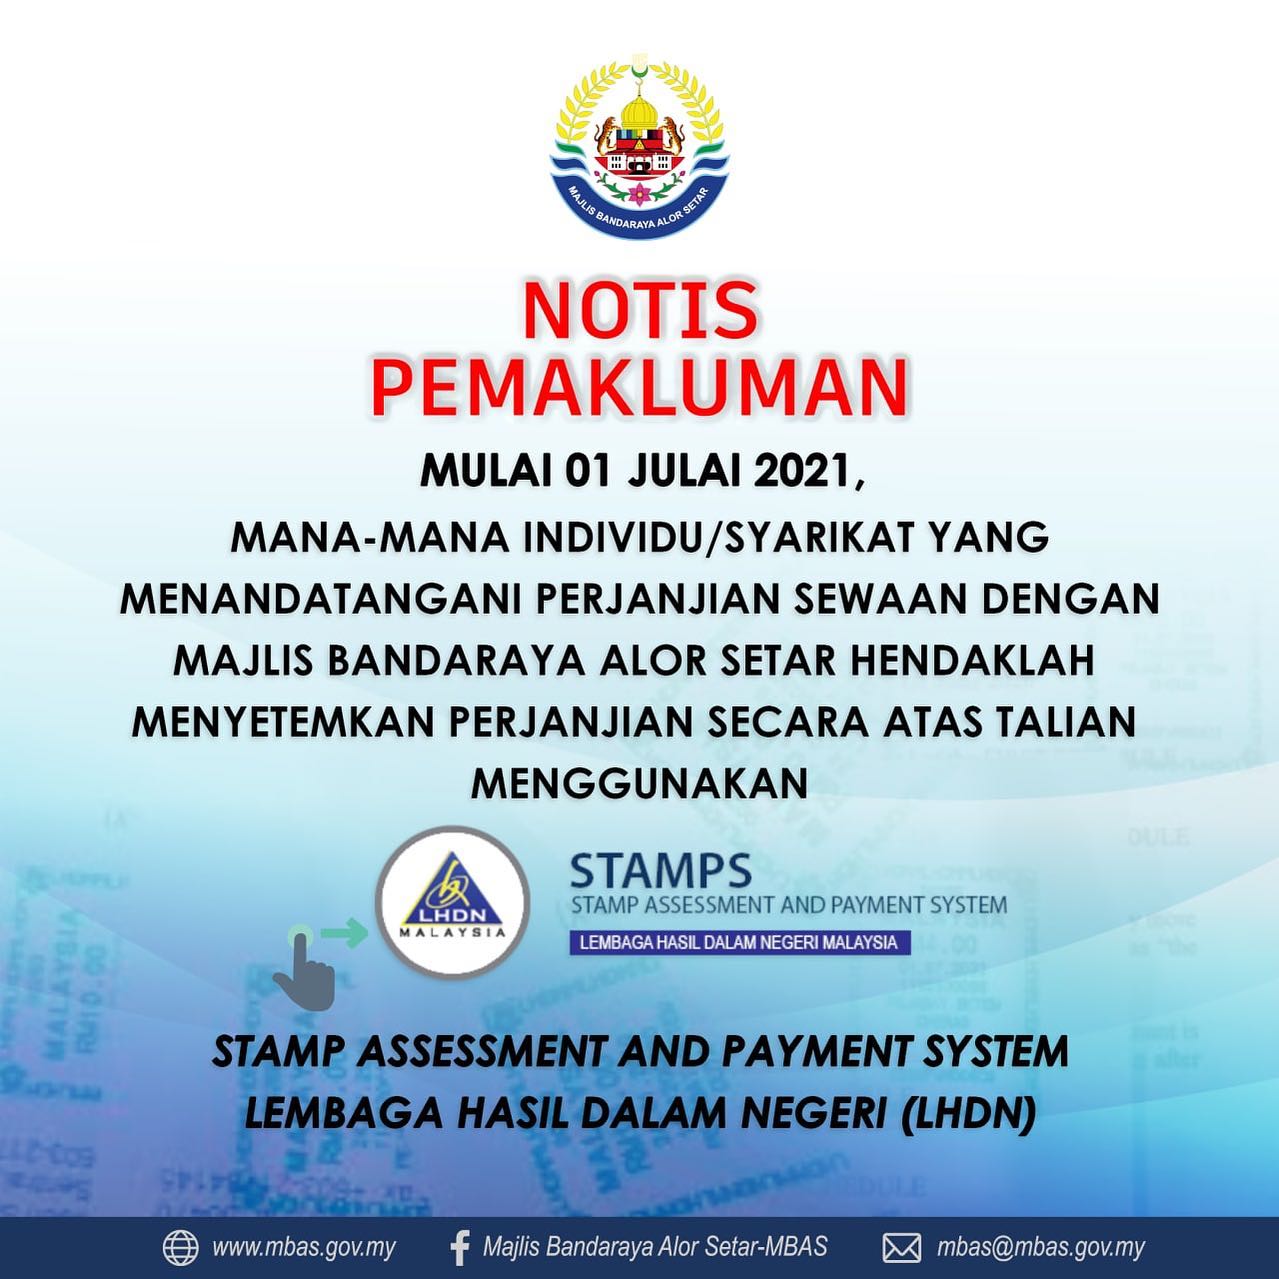 Majlis Bandaraya Alor Setar Portal Pbt Kedah